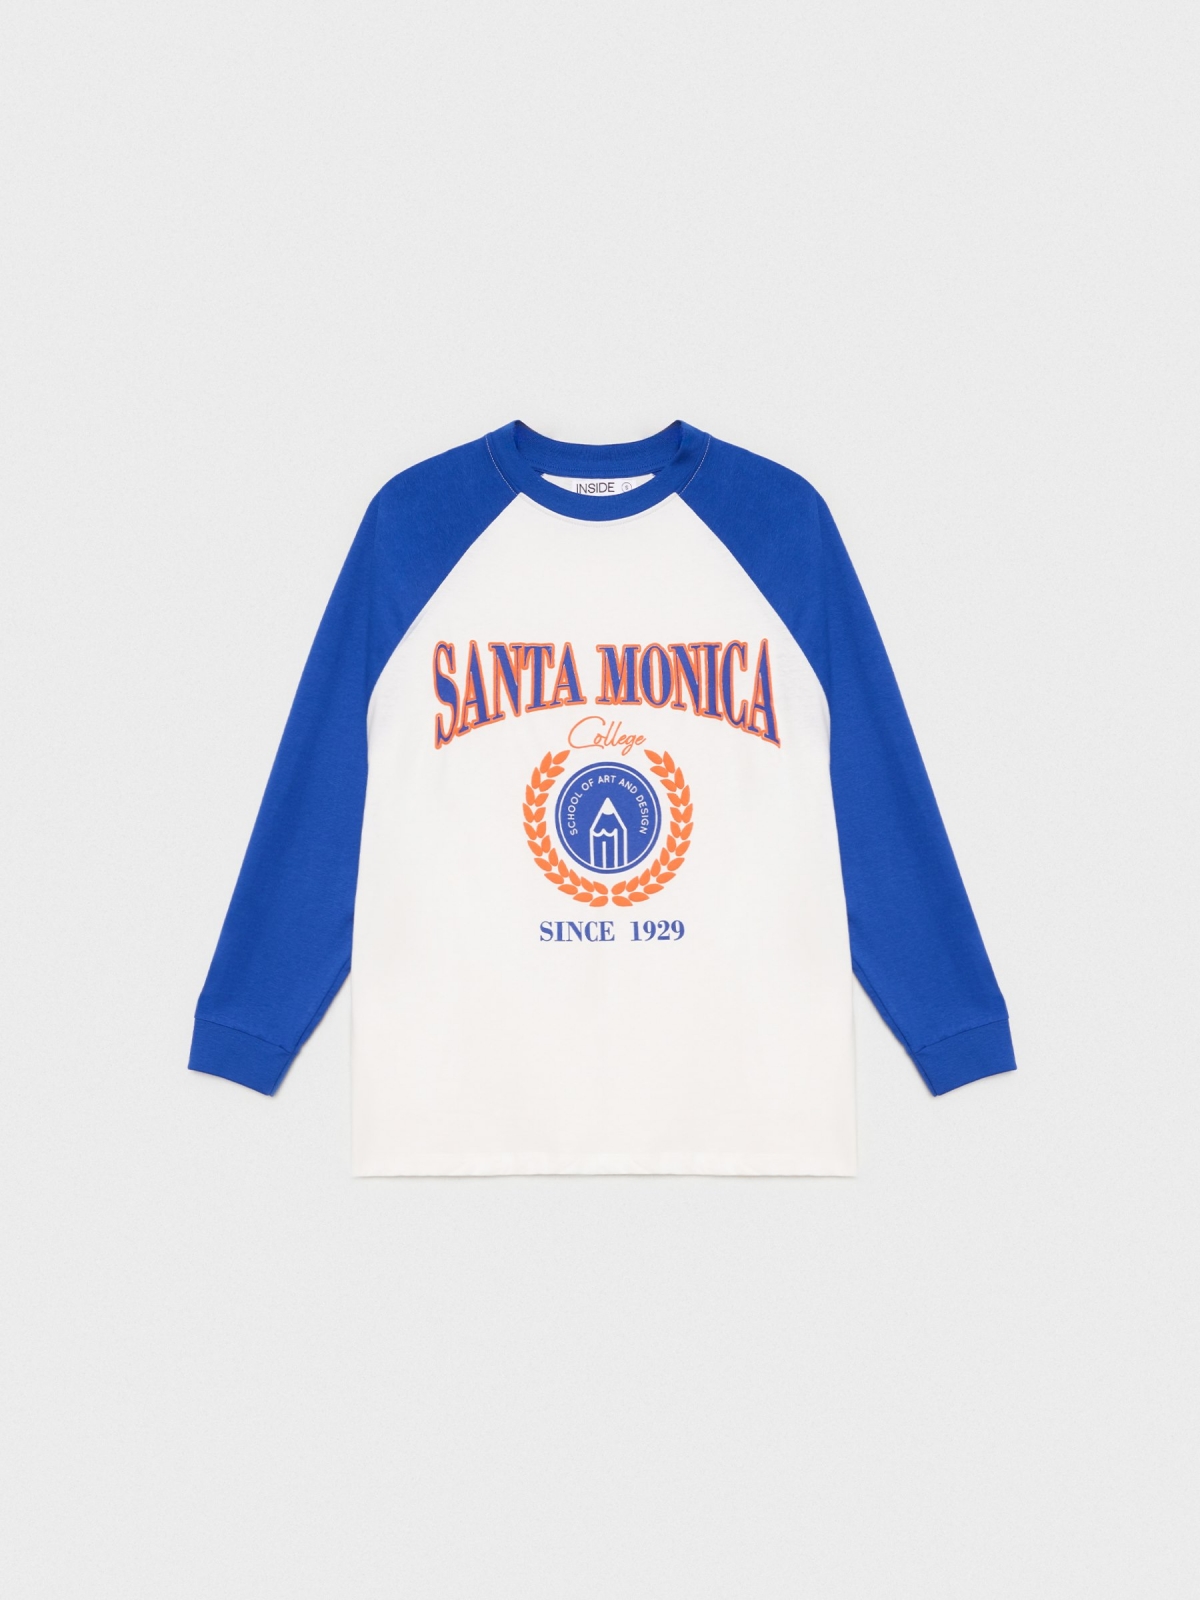  Camiseta print Santa Mónica azul oscuro